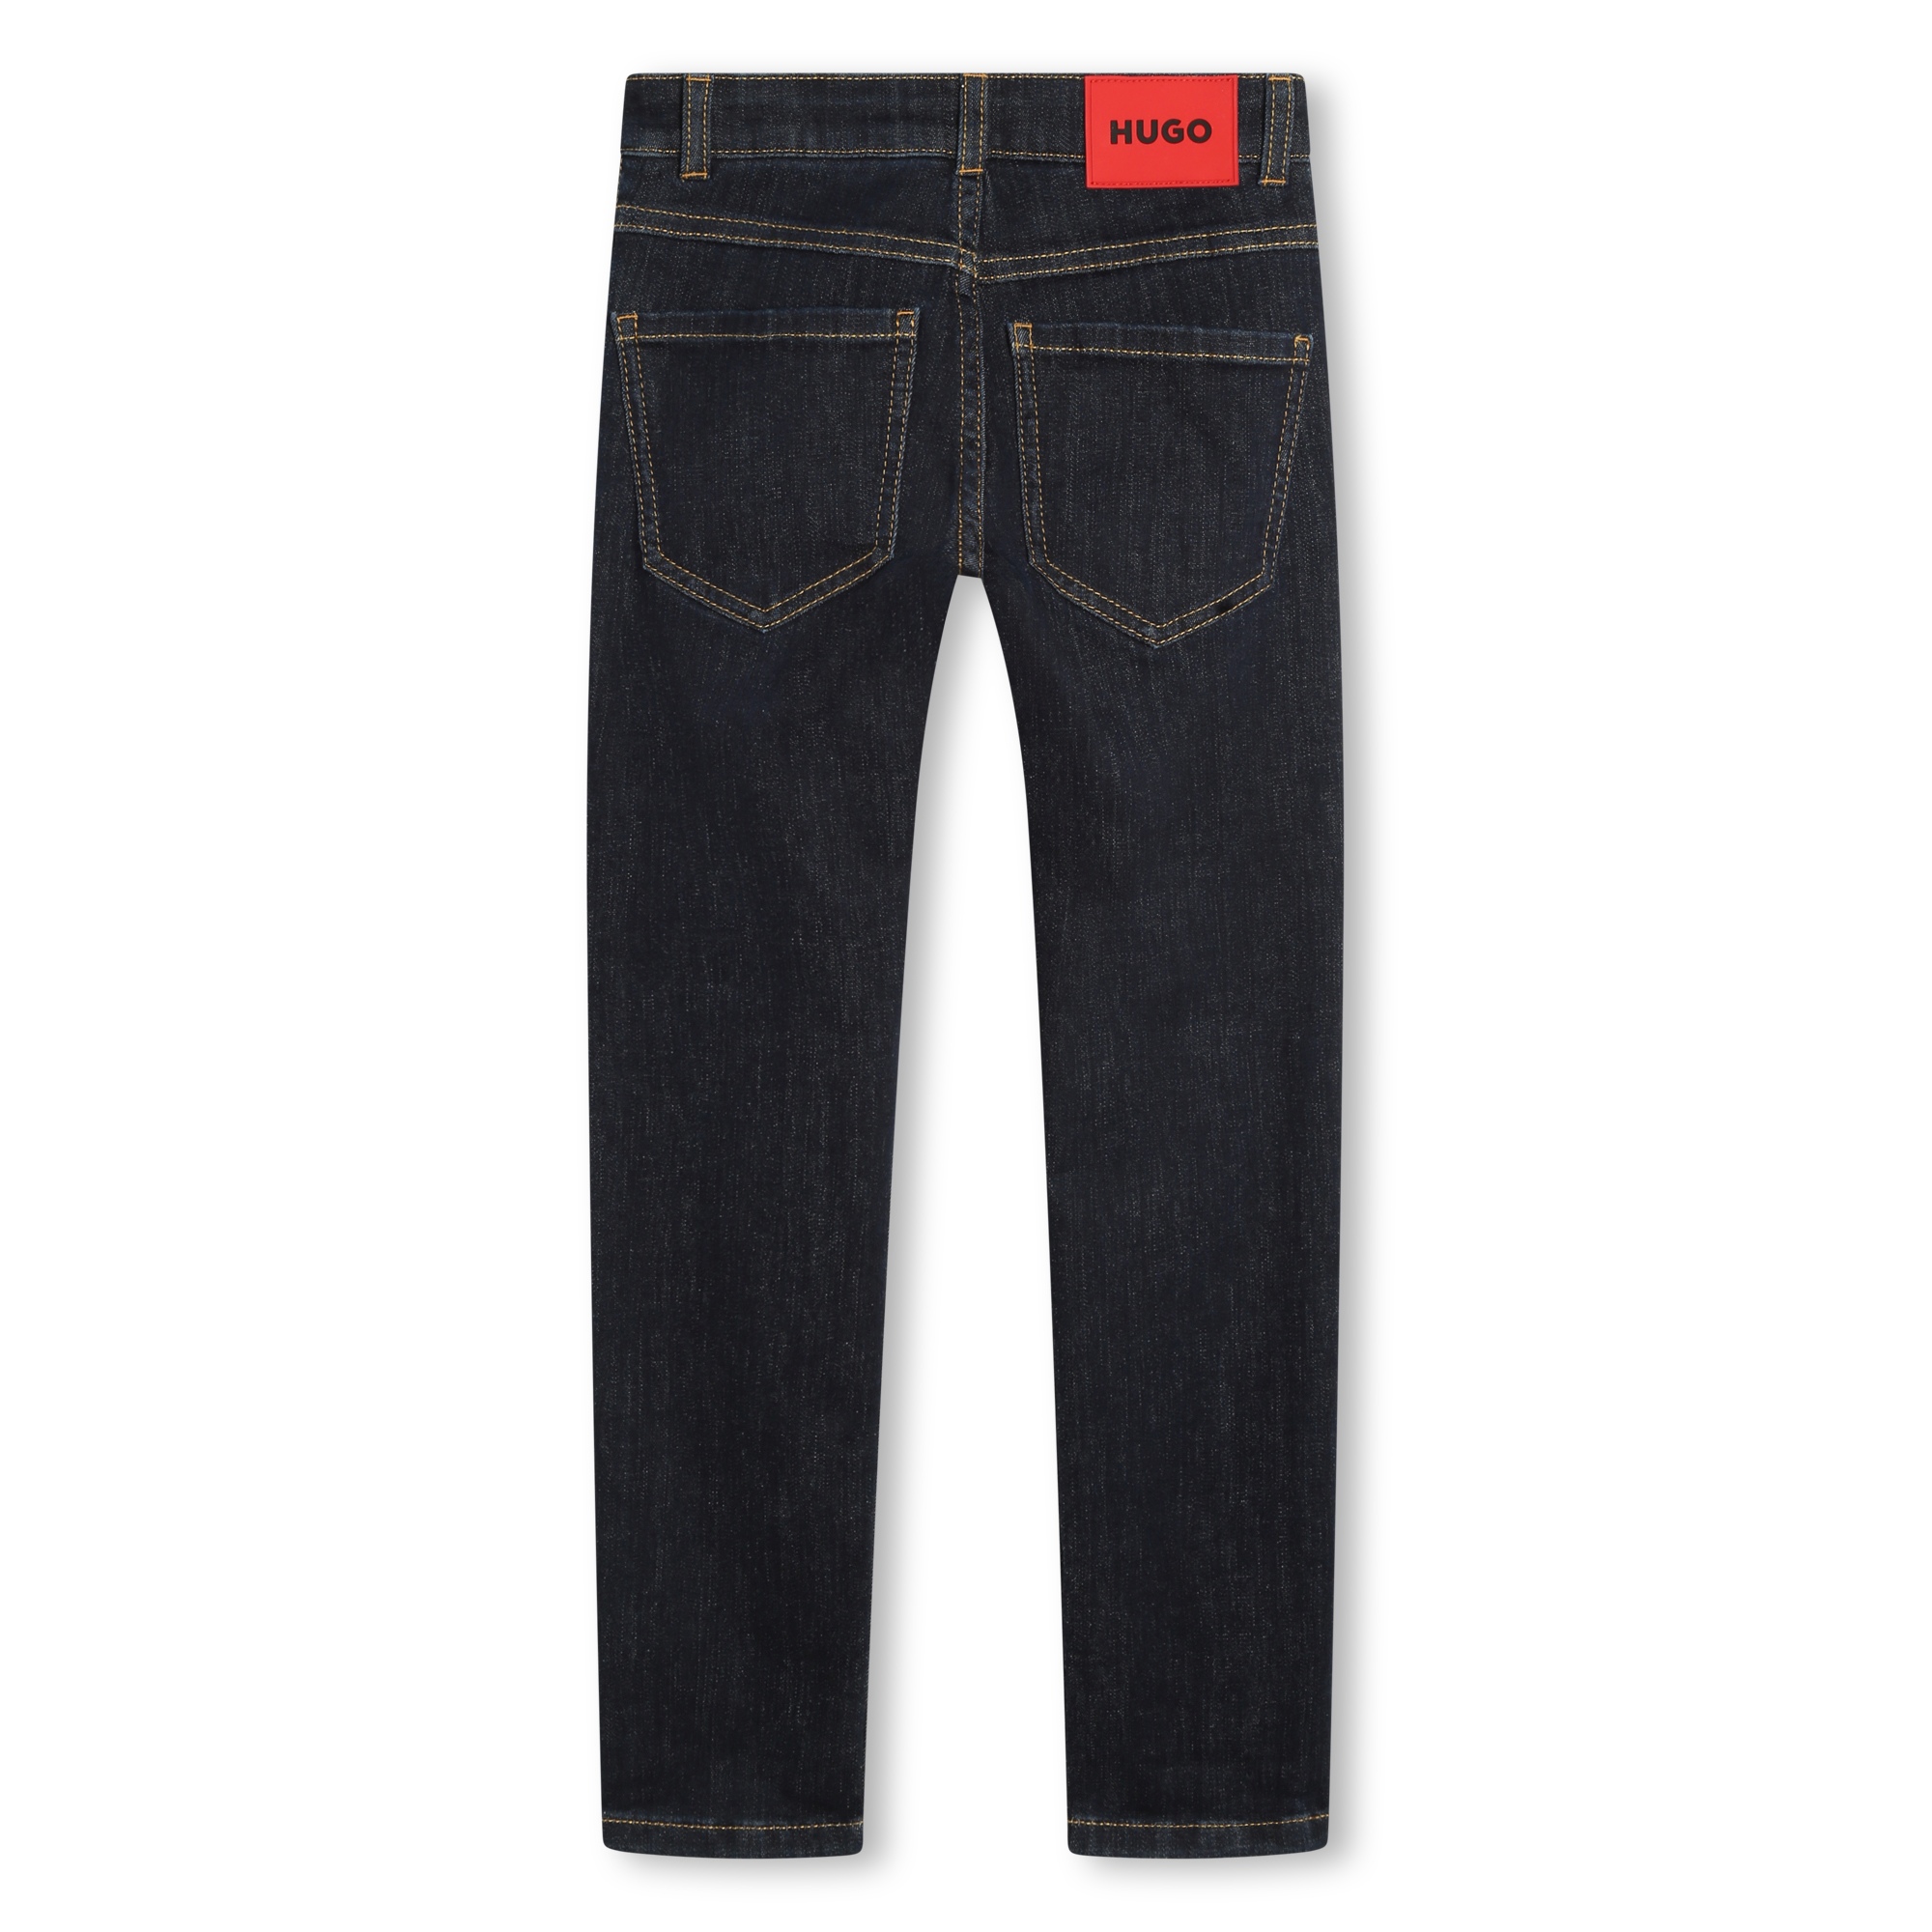 5-pocket patterned jeans HUGO for BOY